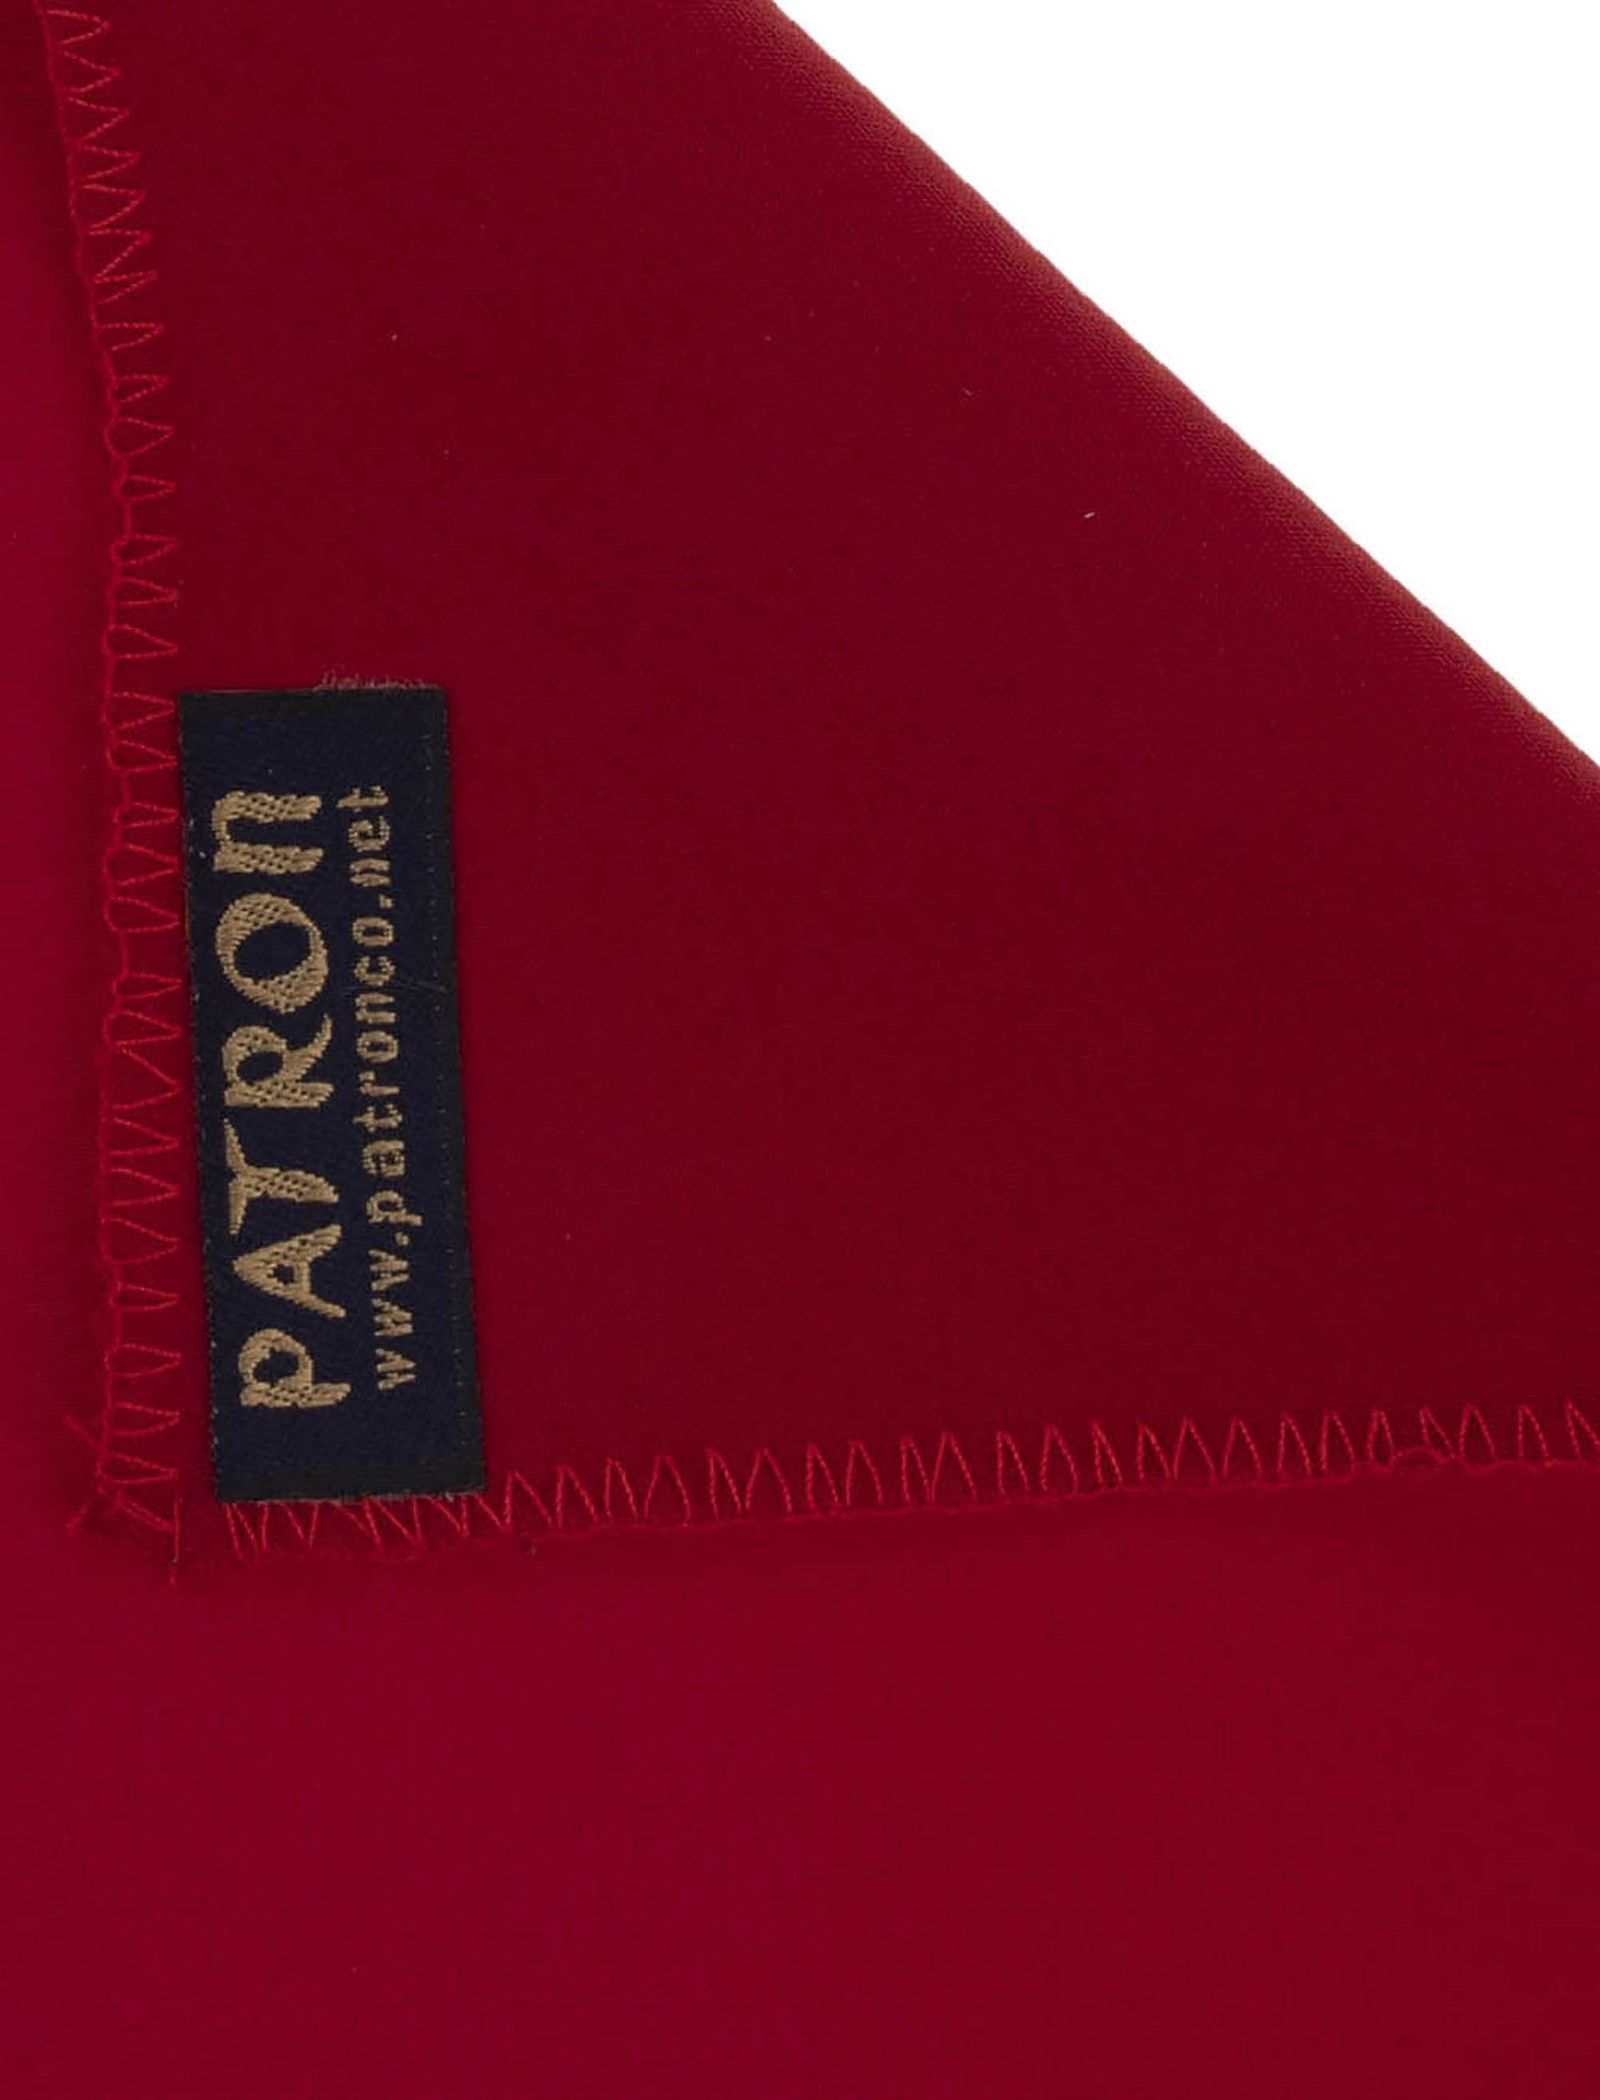 دستمال جیب ساده مردانه - پاترون تک سایز - قرمز - 3